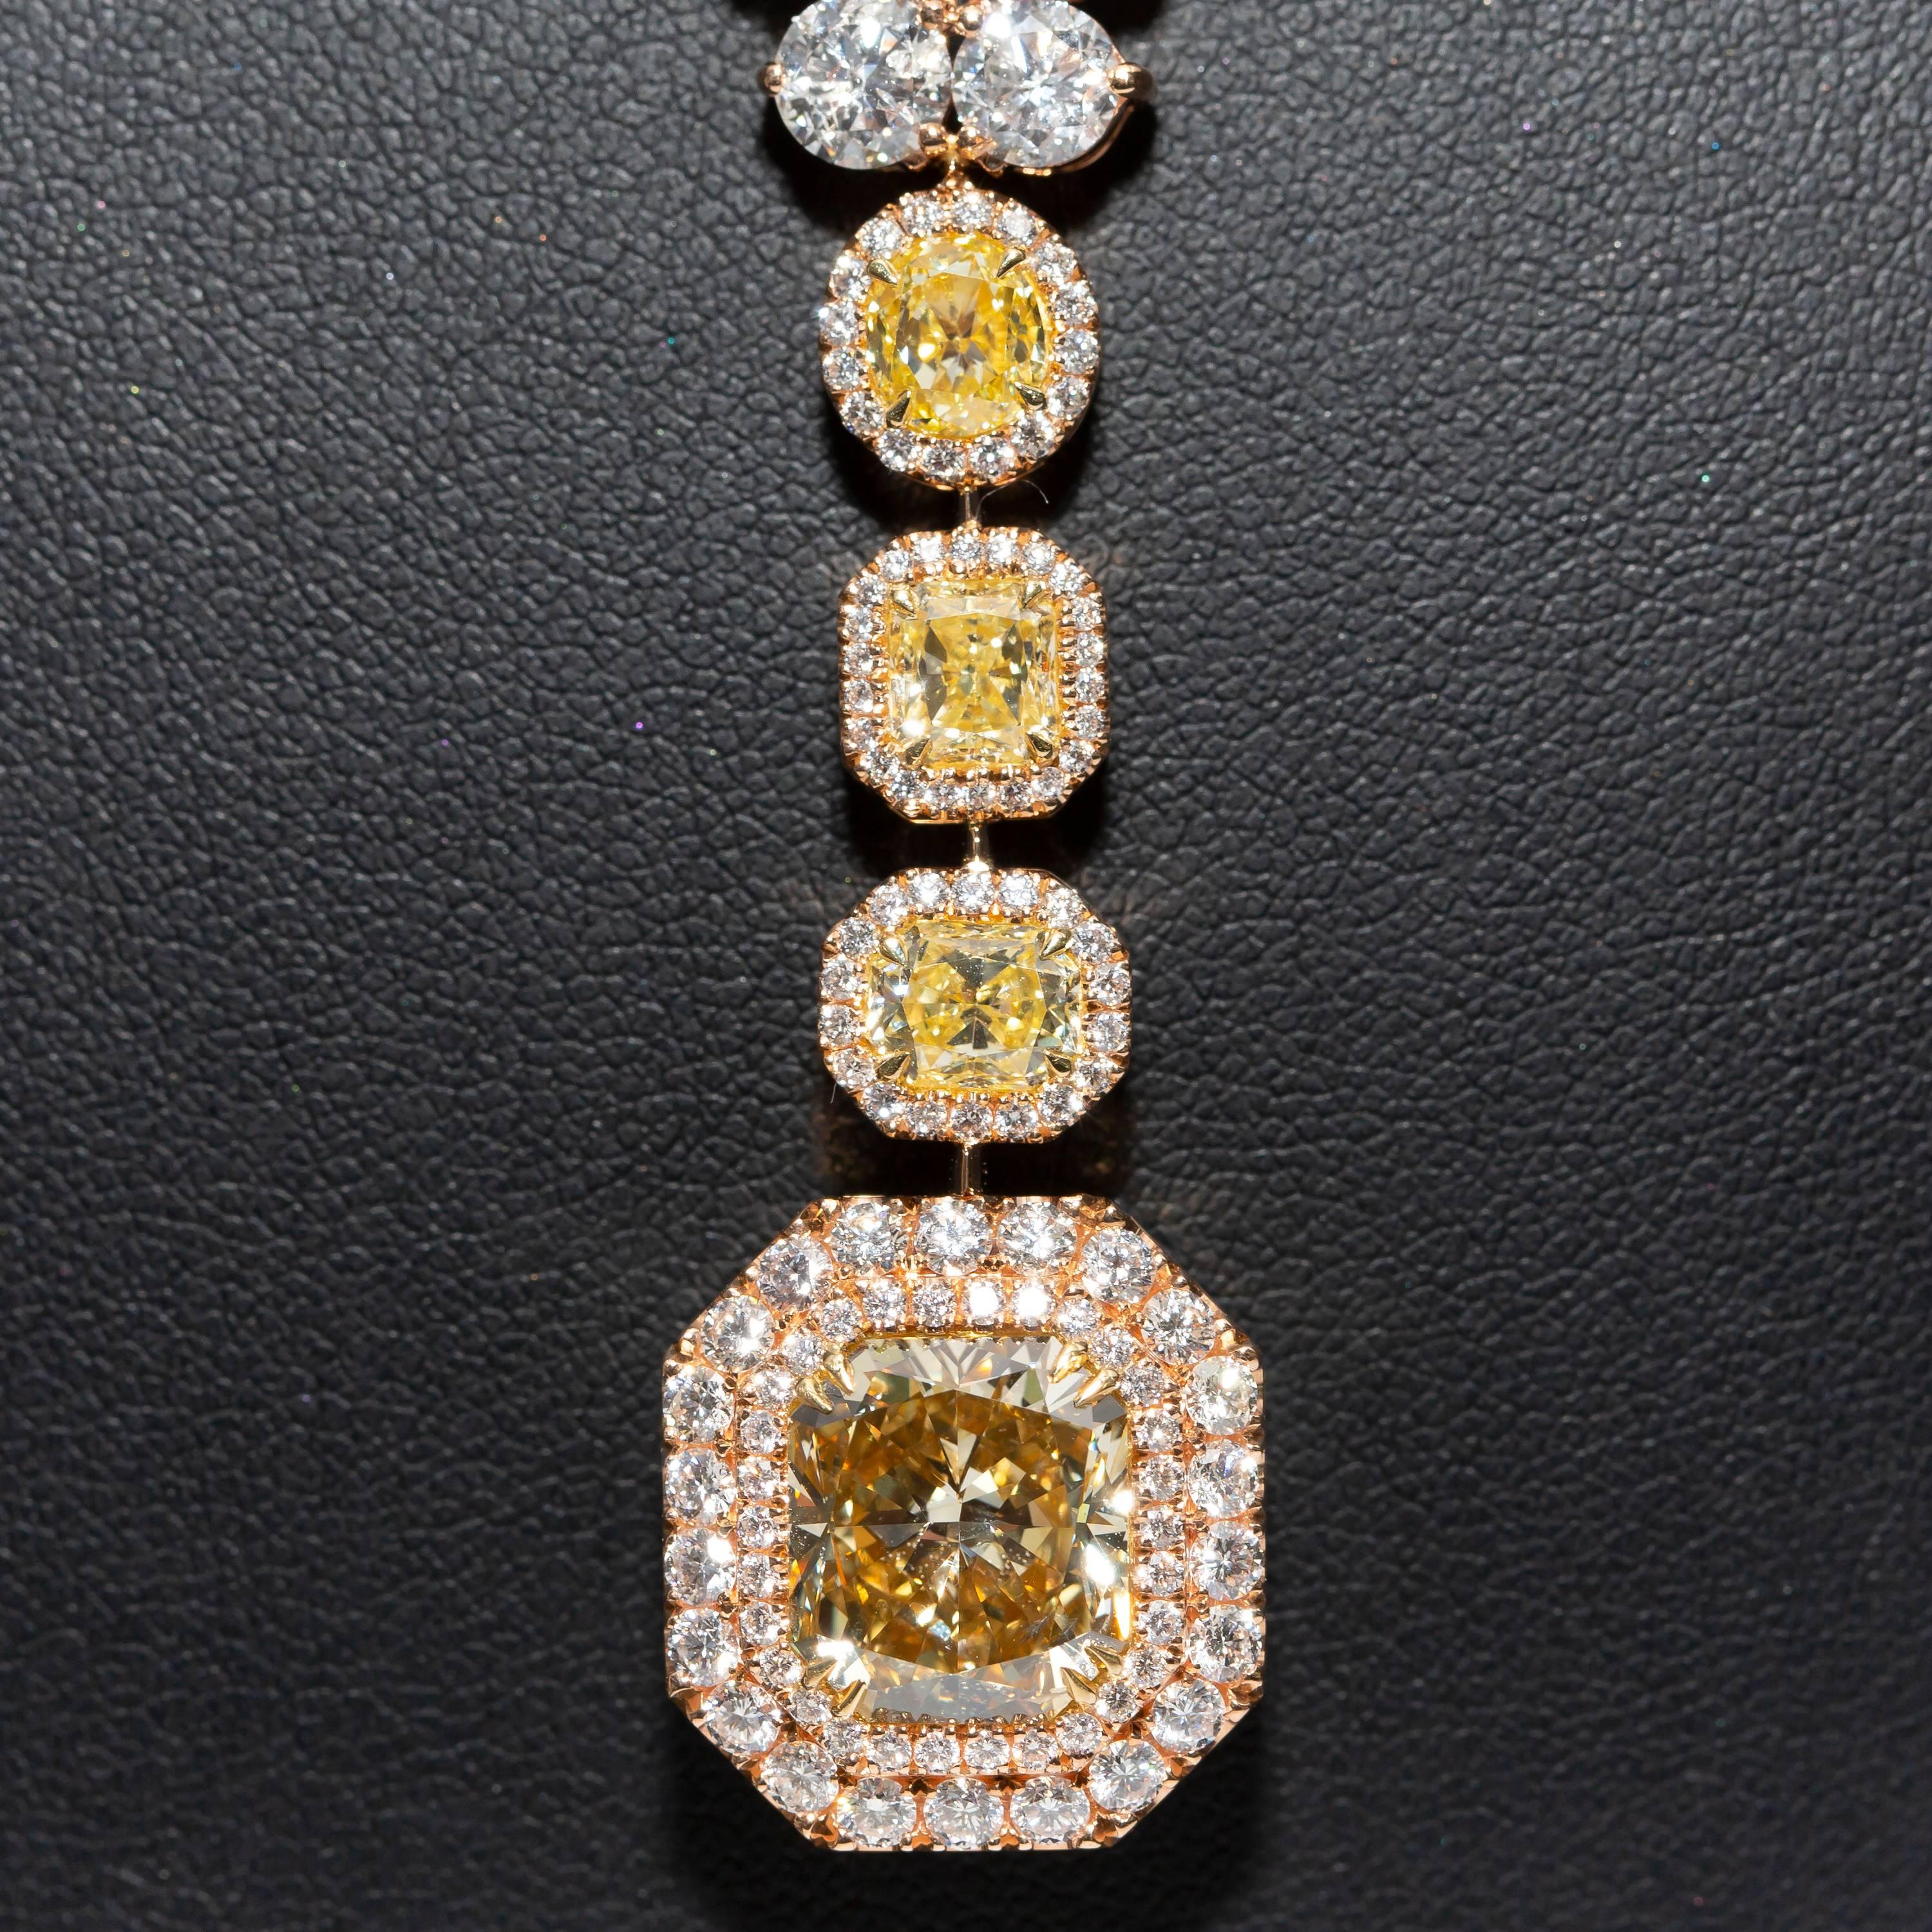 GIA-zertifizierter Mittelstein 6,06 Karat Fancy Deep Brownish Yellow, Reinheit SI2, umgeben von einem doppelten Halo aus weißen Diamanten, ergänzt durch drei gemischte Formen gelber Diamanten (Y-Z VS2) im Rund-, Strahlen- und Kissenschliff. Die drei